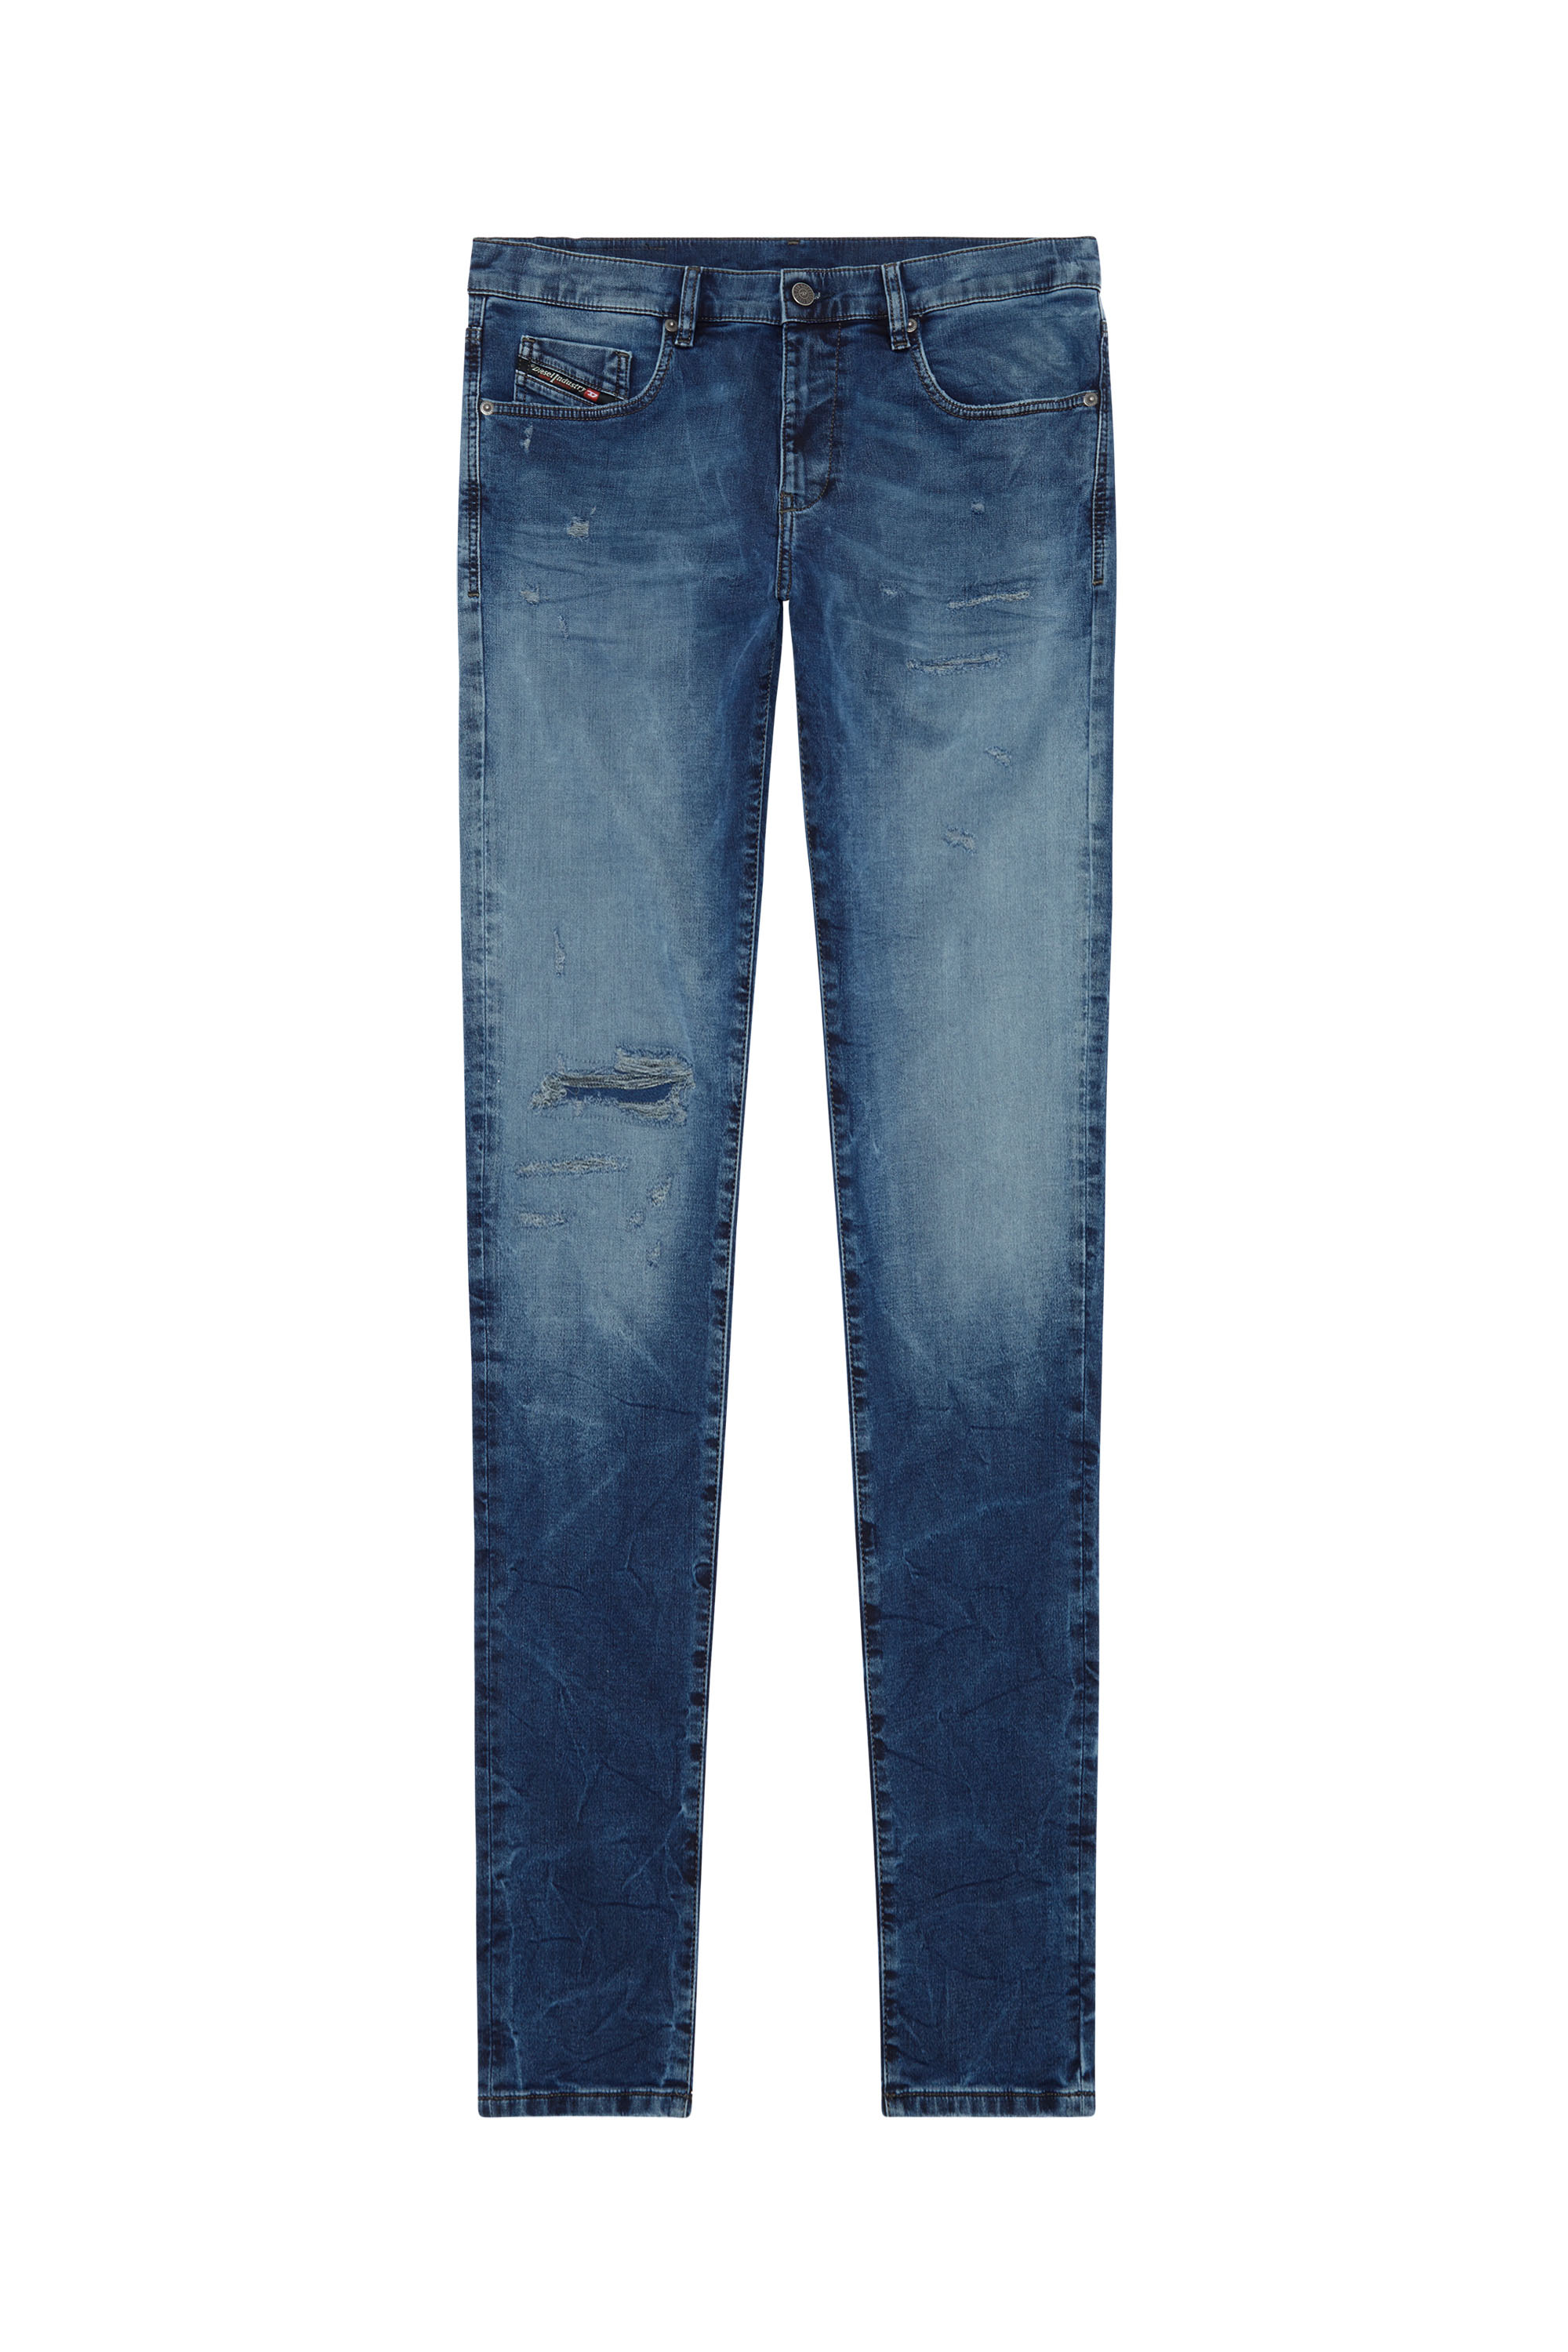 Diesel - Slim D-Strukt JoggJeans® E9H11, Dark Blue - Image 5